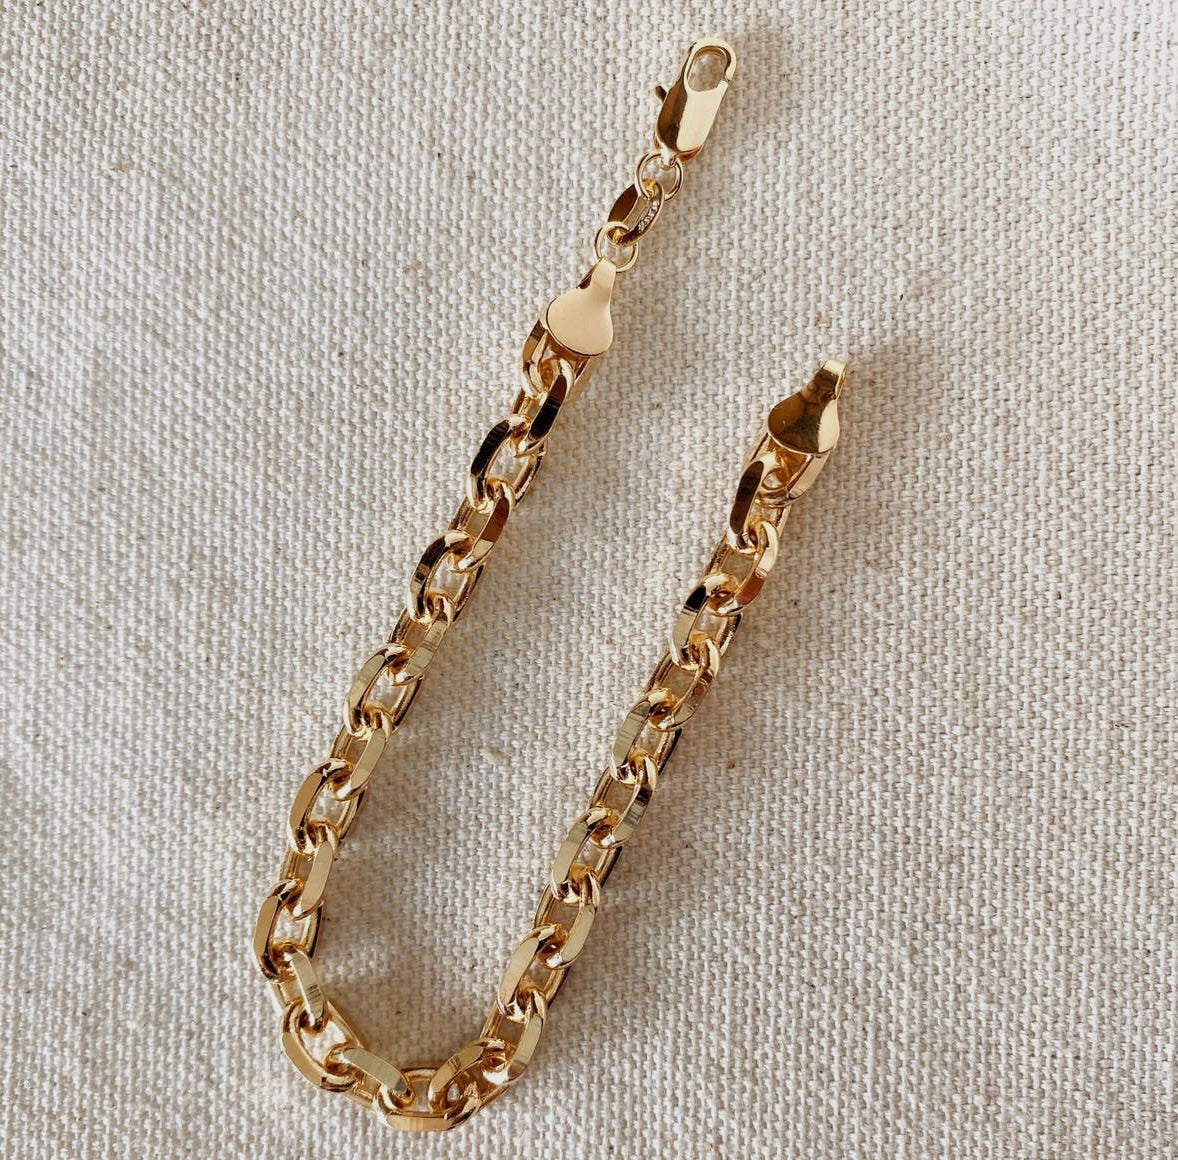 GoldFi - 18k Gold Filled 7mm Link Bracelet